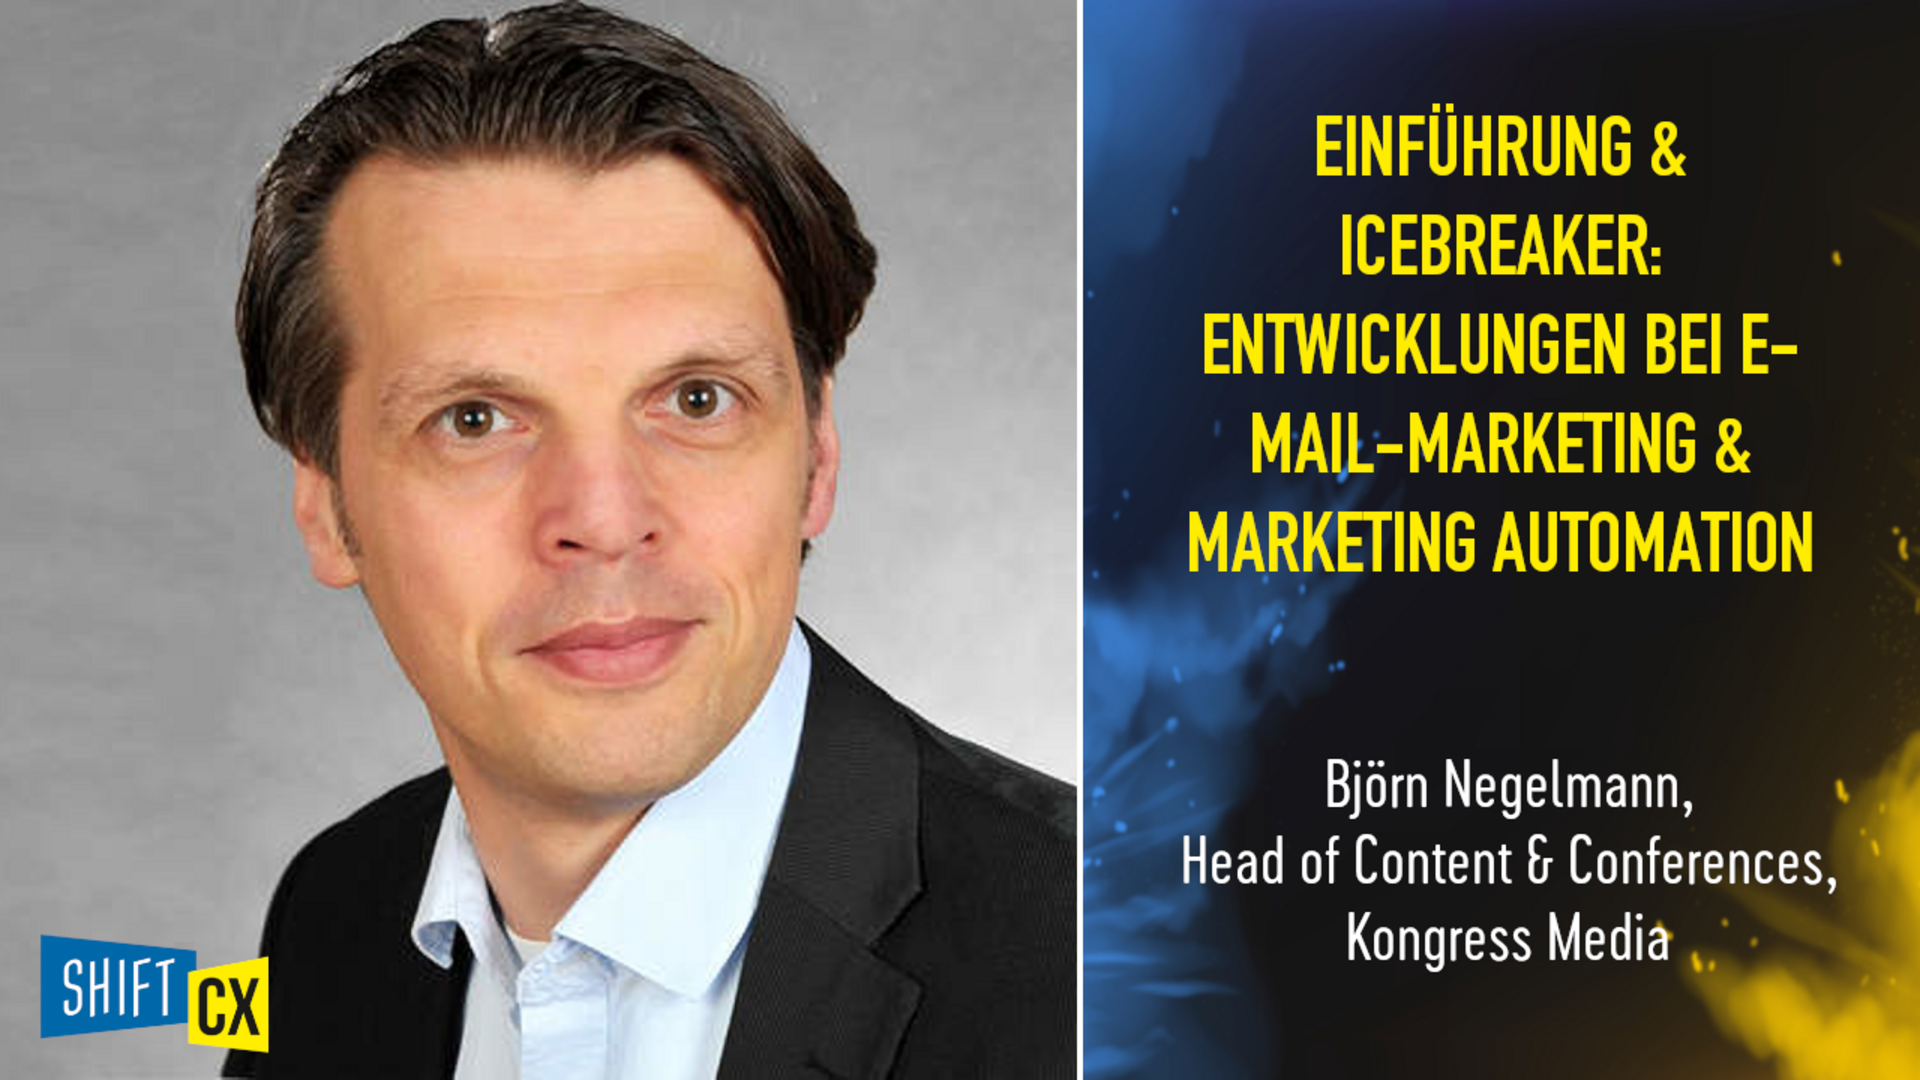 Einführung & Icebreaker: Entwicklungen bei E-Mail-Marketing & Marketing Automation